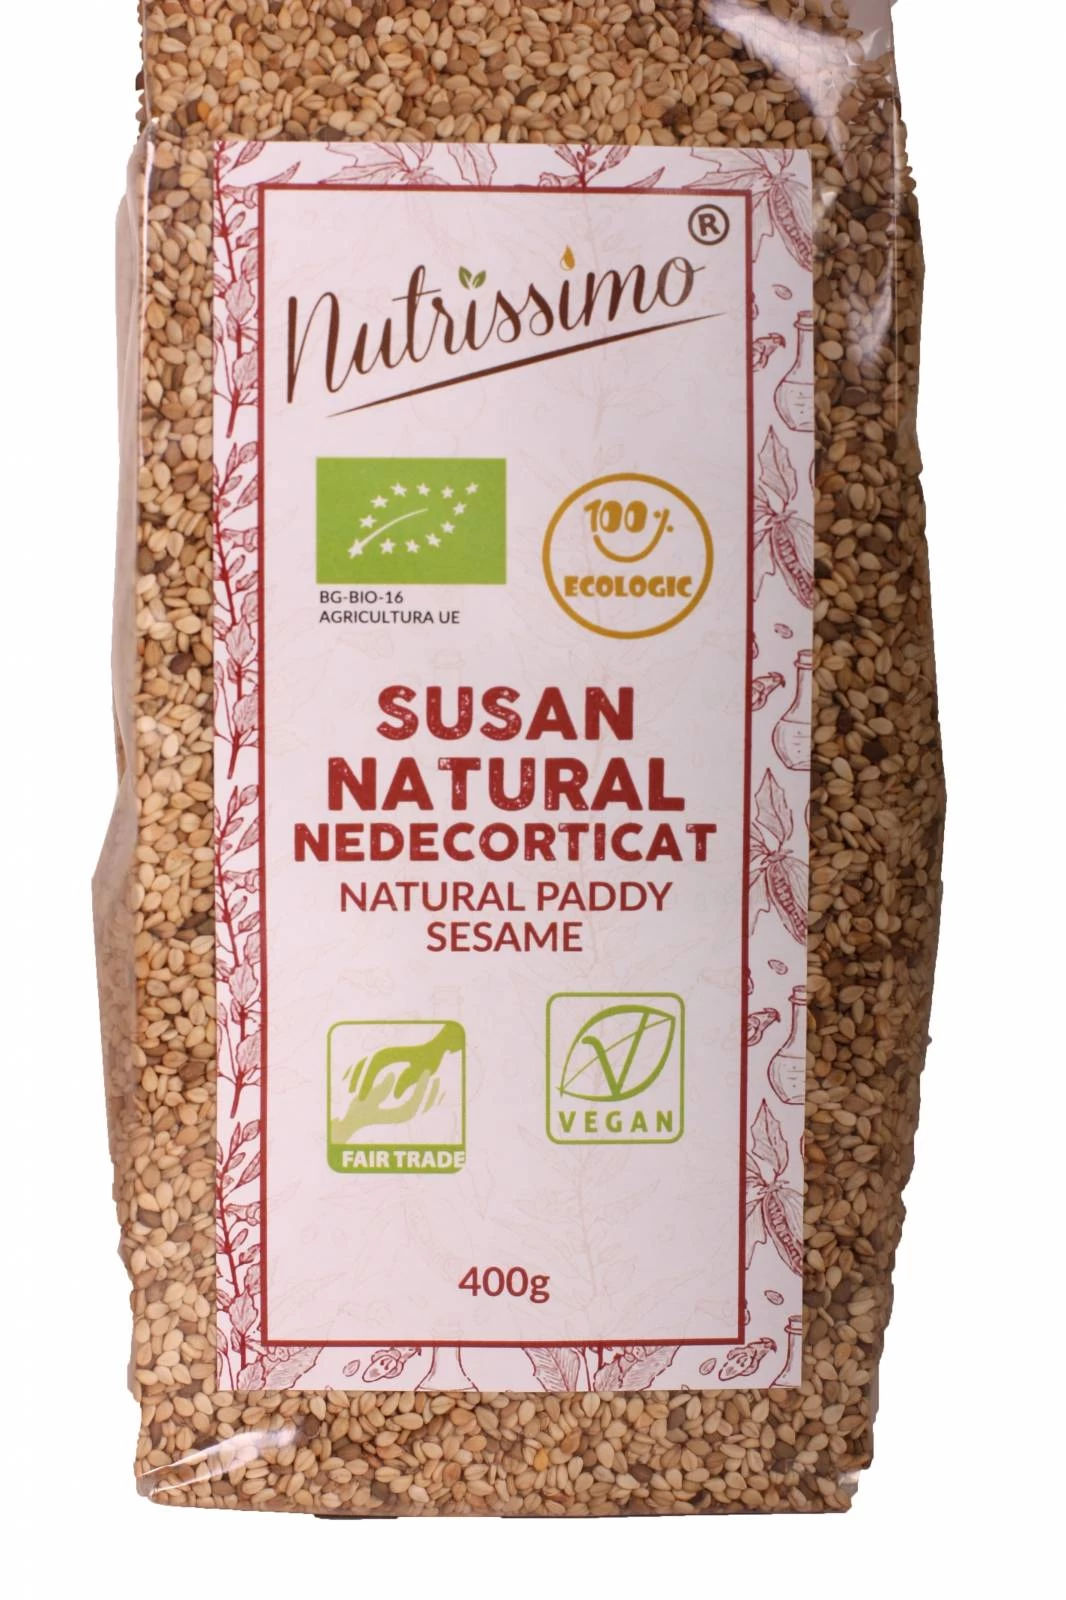 Susan natural nedecorticat, eco-bio, 400g - nutrissimo